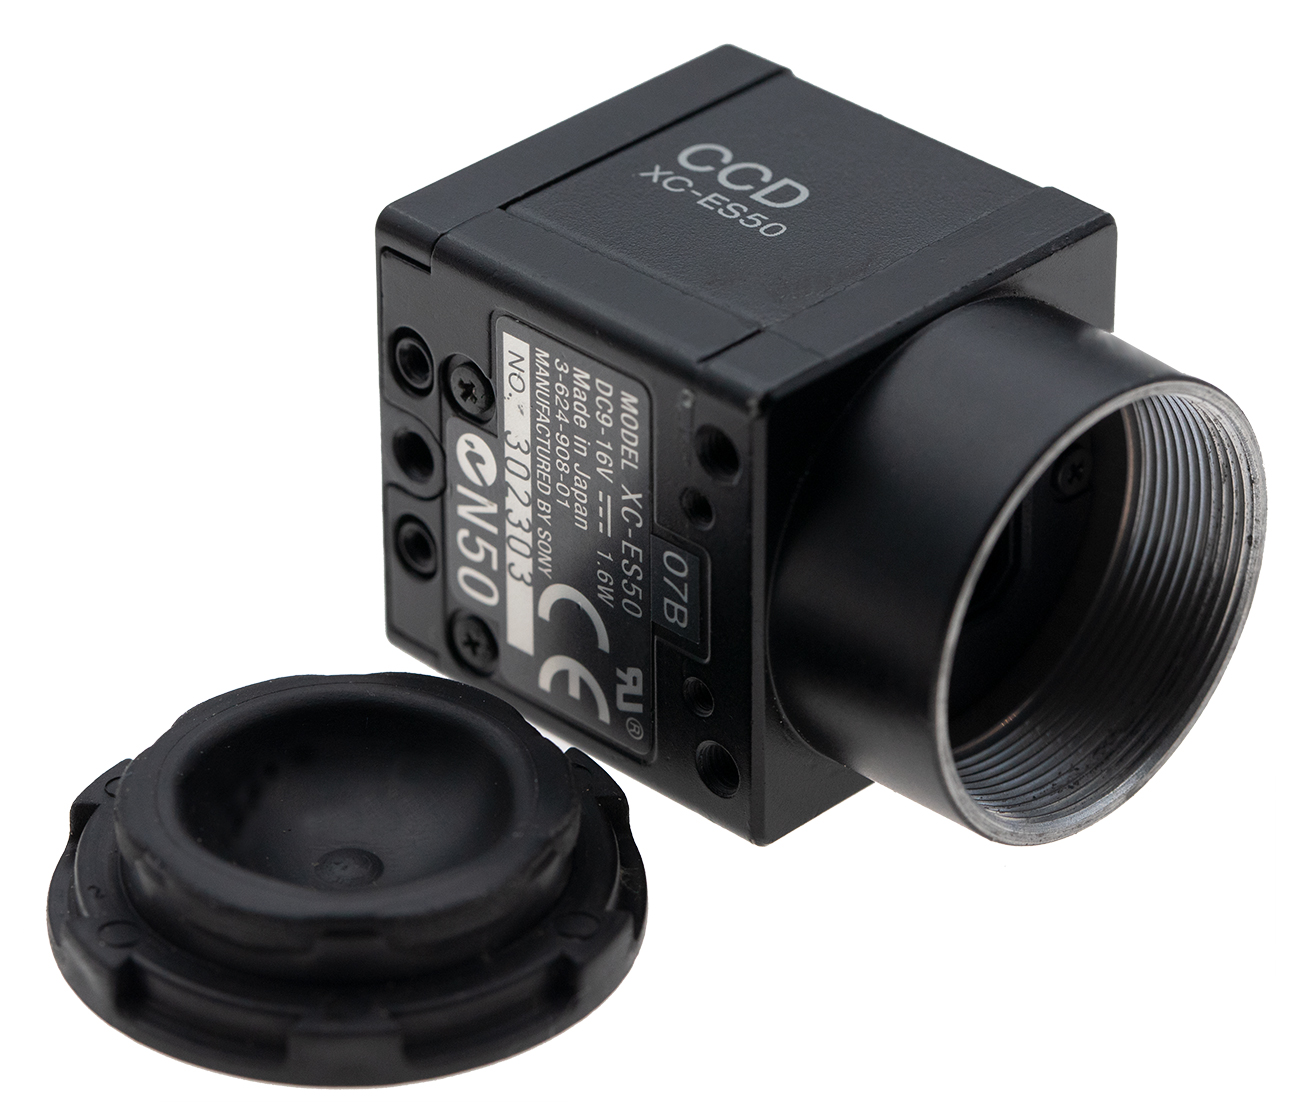 索尼SONY CCD工业相机，超小型黑白工业相机，EIAJ 12Pins接口相机，BLACK WHITE VIDEO  CCD industrial CAMERA,1/2 ccd camera，1/3 ccd industrial camera 